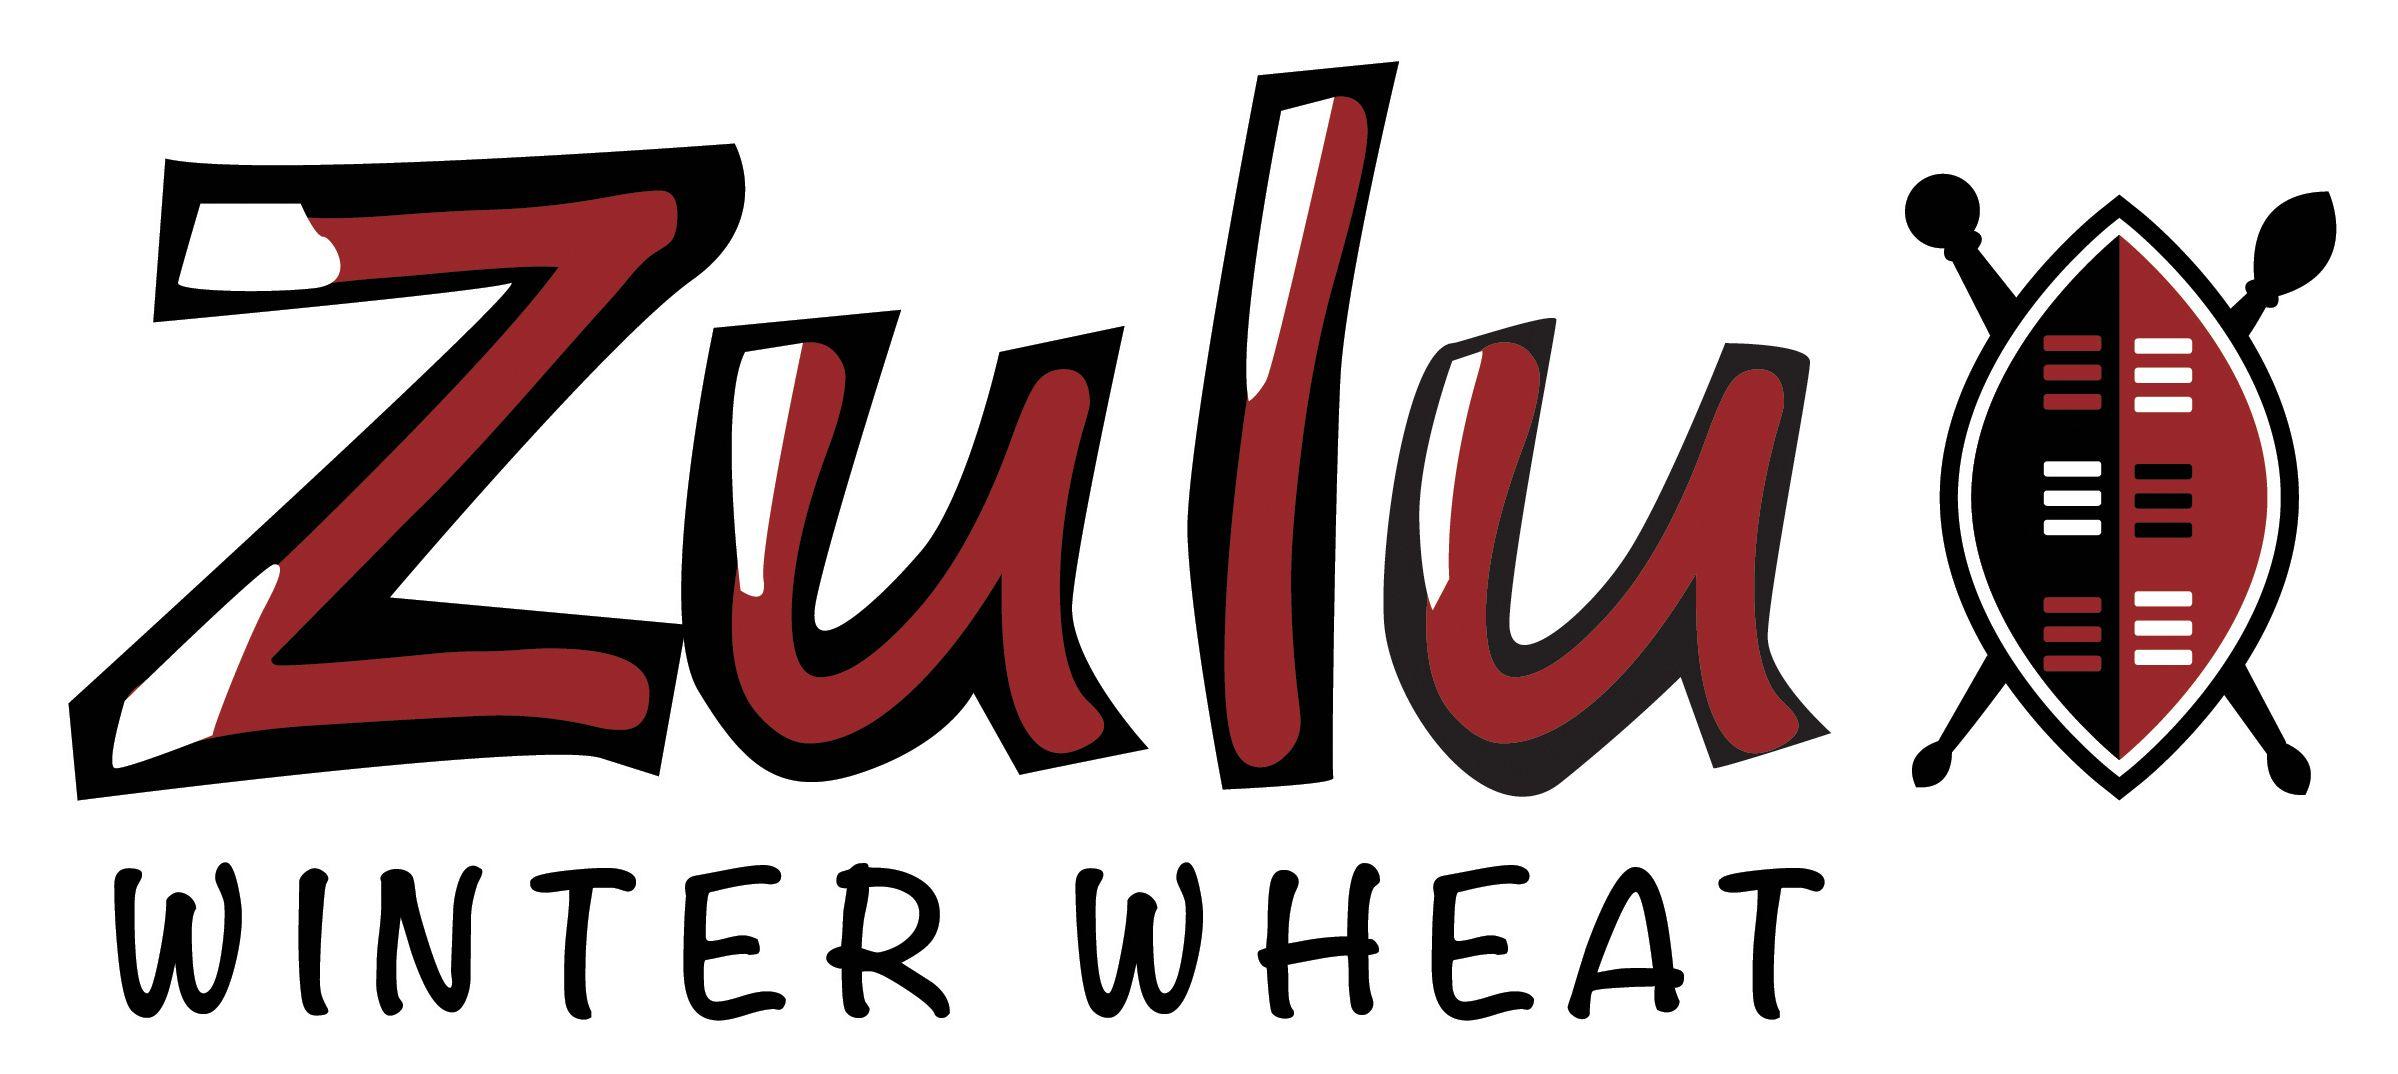 Zulu Logo - Zulu | Group 3 Winter Wheat Cereal | LG Seeds UK